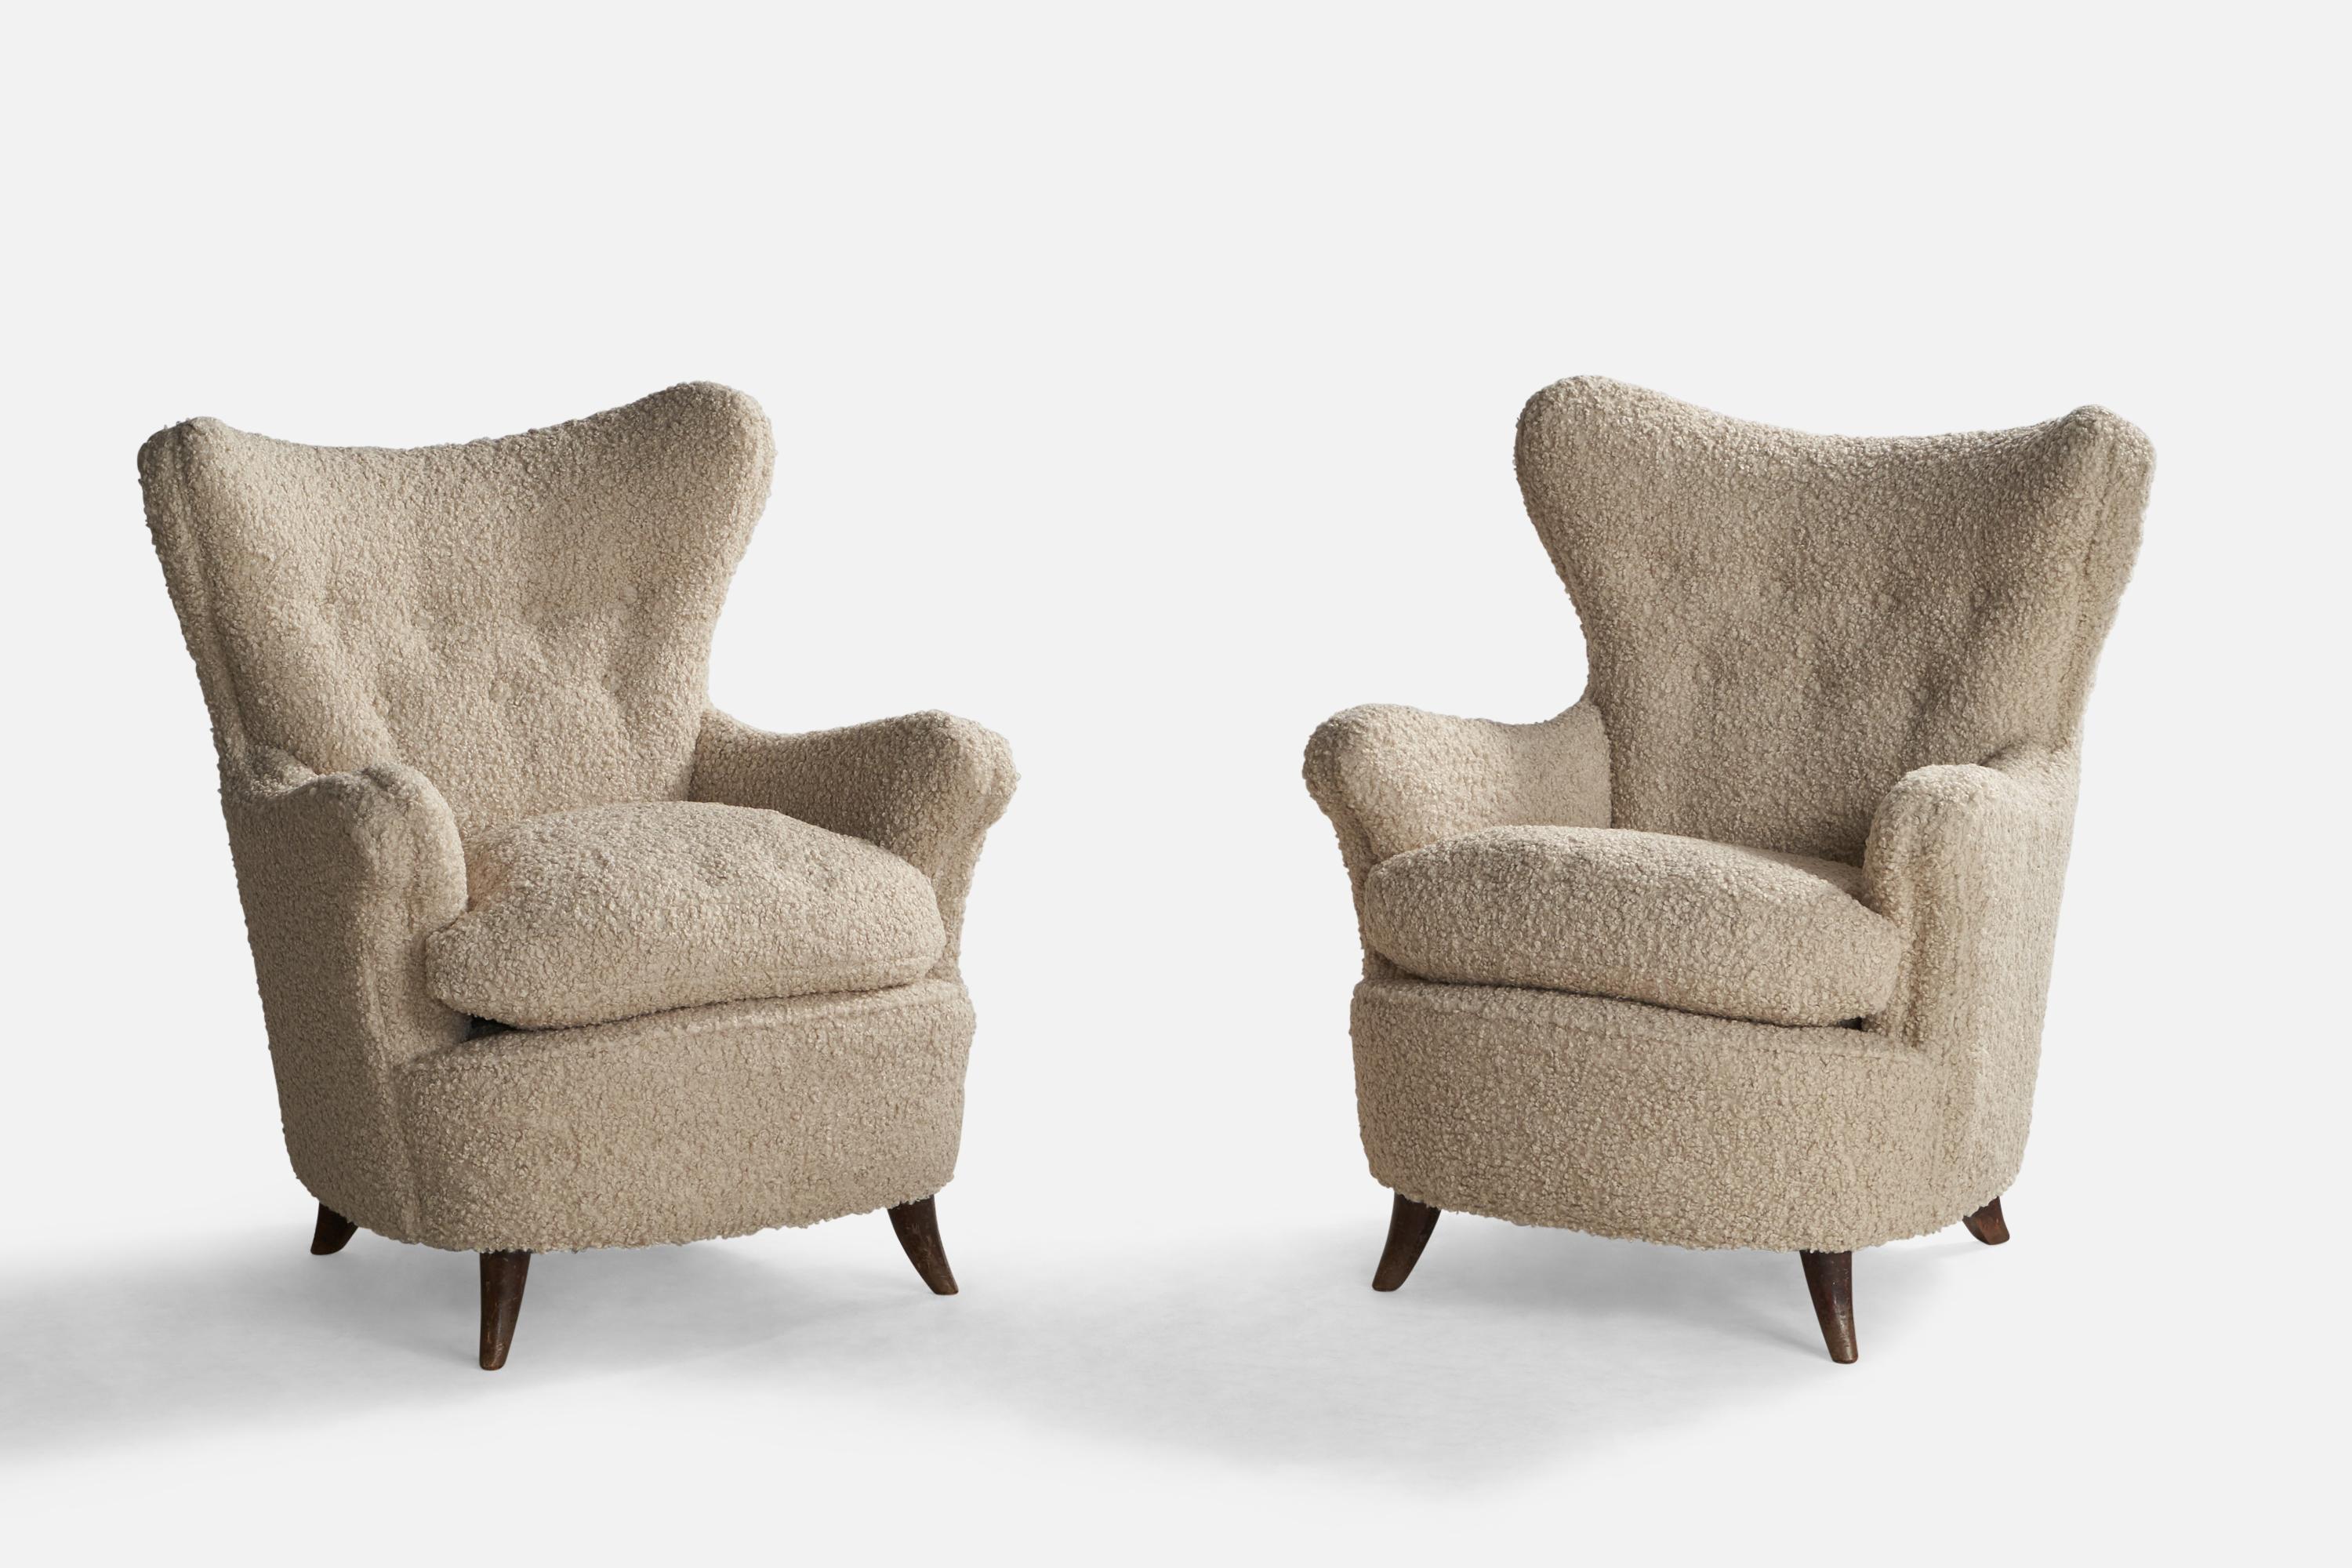 Ein Paar Sessel aus dunkel gebeiztem Holz und cremefarbenem Bouclé-Stoff, entworfen von Osvaldo Borsani und hergestellt von Arredamenti Borsani, Italien, 1940er Jahre.

Sitzhöhe: 18.75